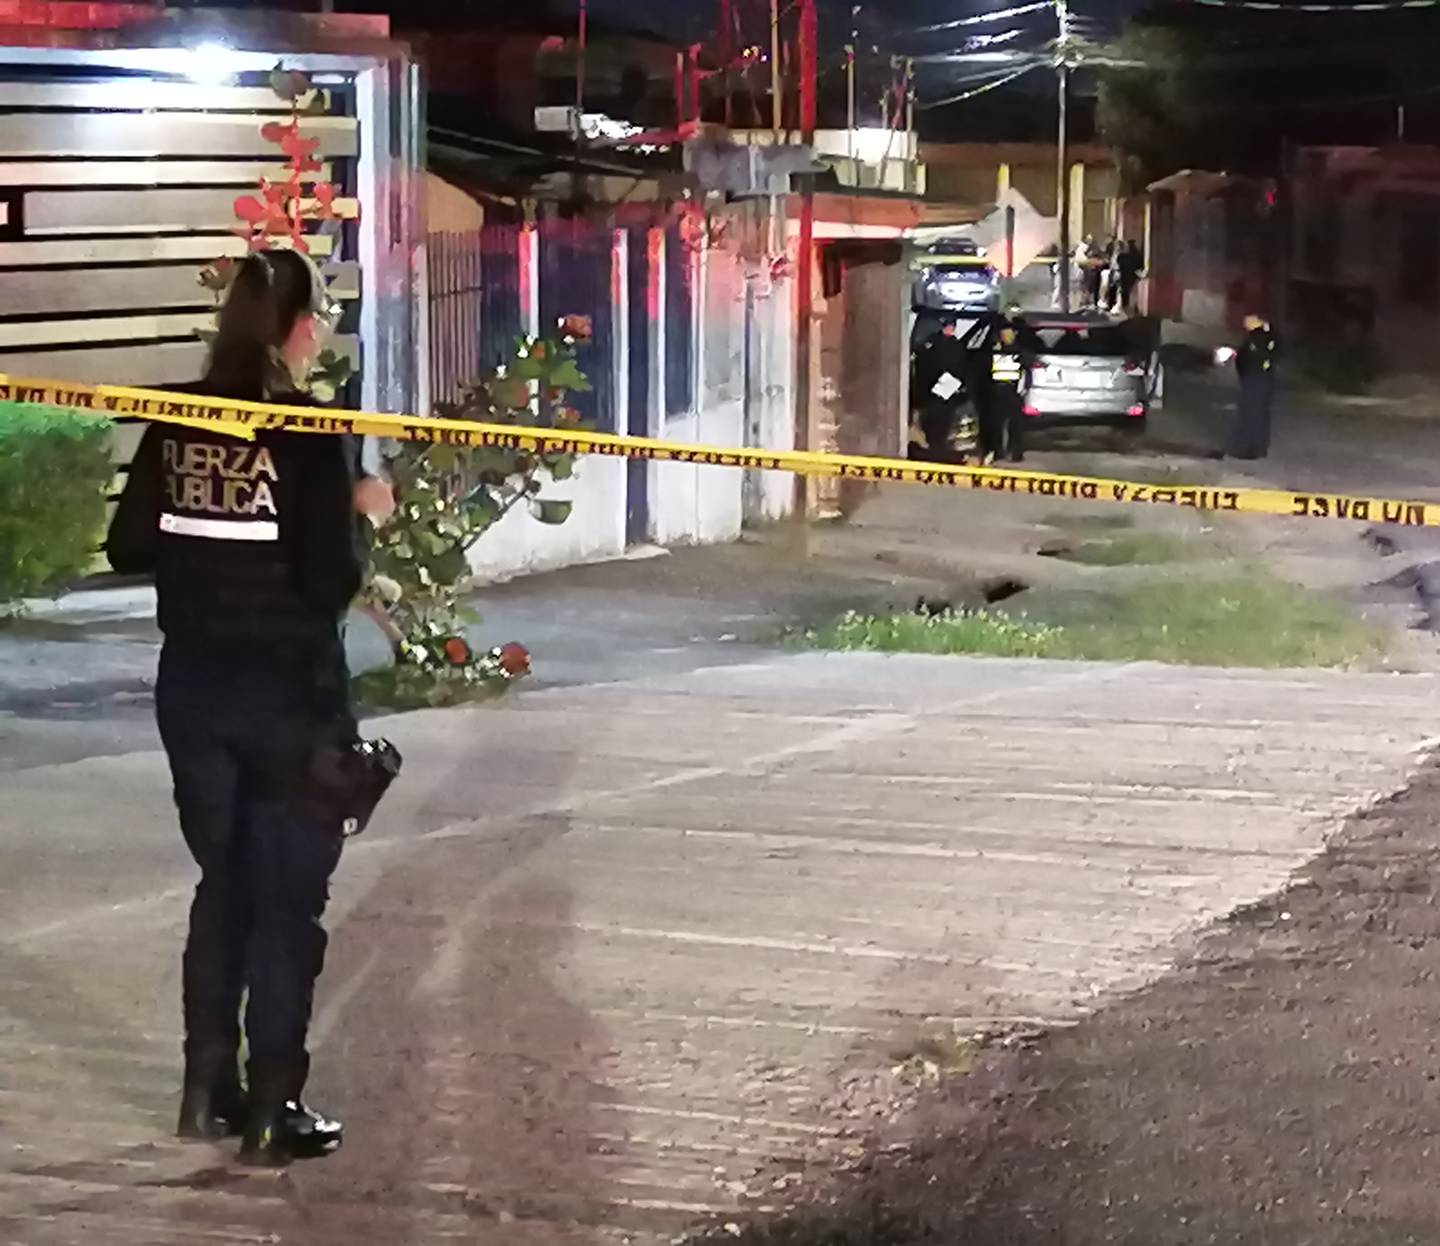 El OIJ investiga el motivo del asesinato ocurrido en Guadalupe de Cartago la noche de este 19 de marzo. Foto: Keyna Calderón.